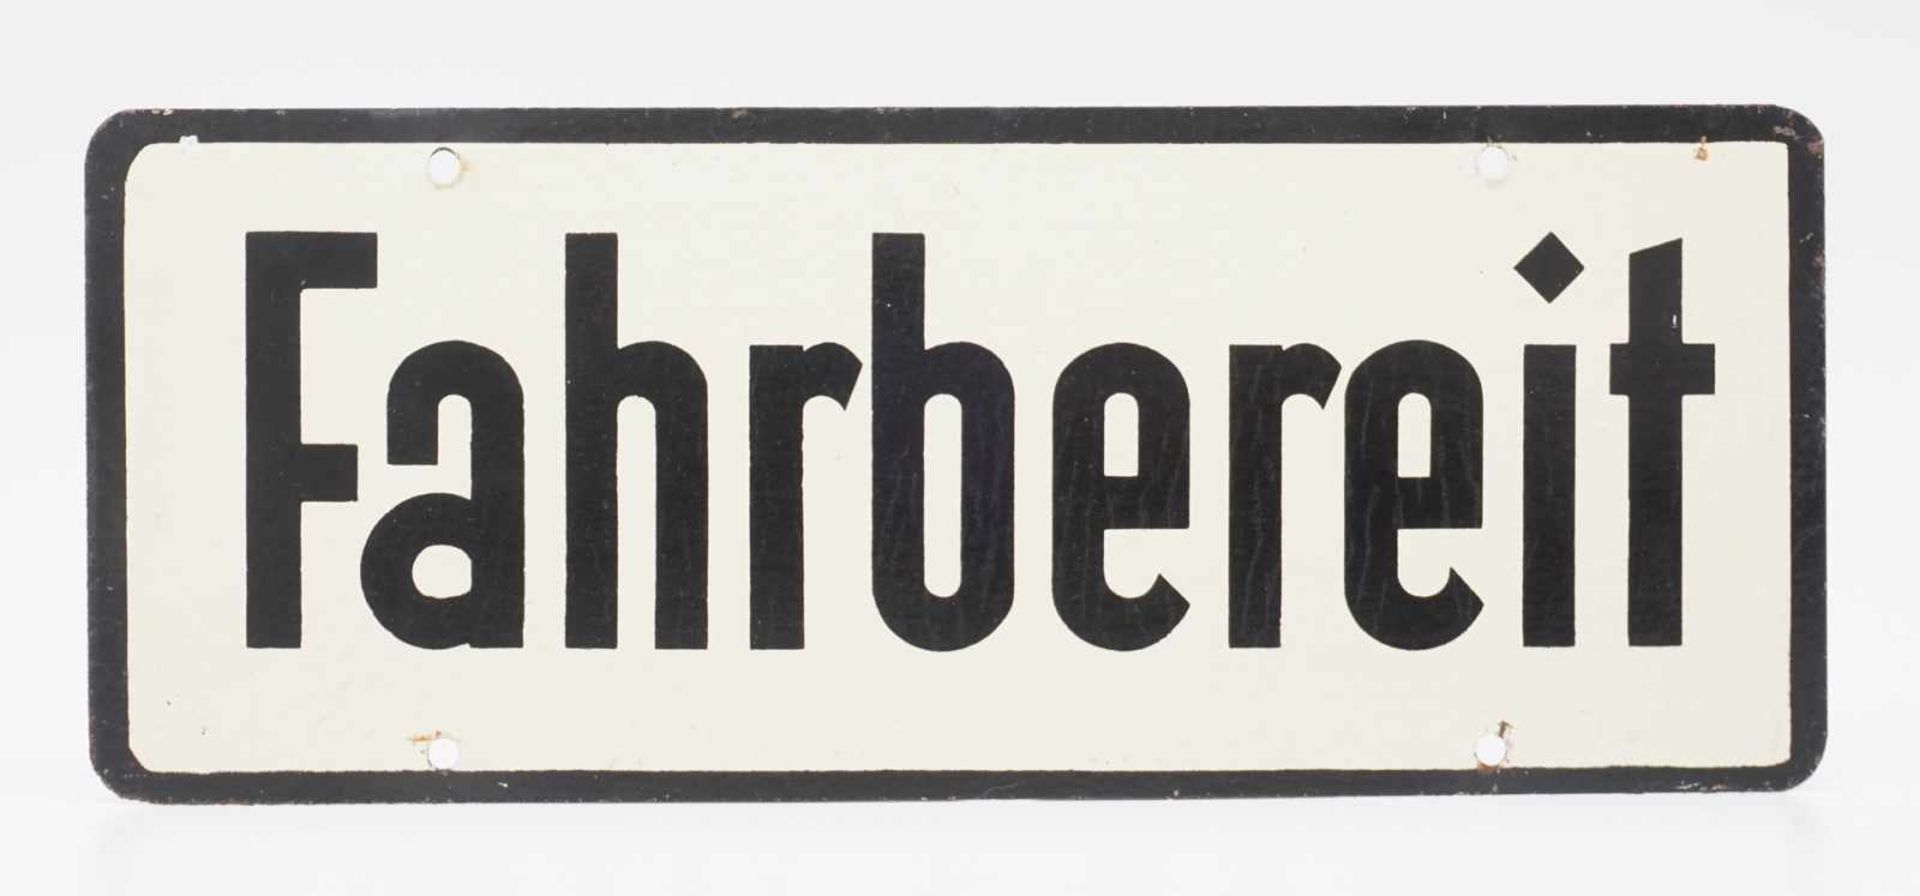 Wehrmacht Blechschild "Fahrbereit", um 1940